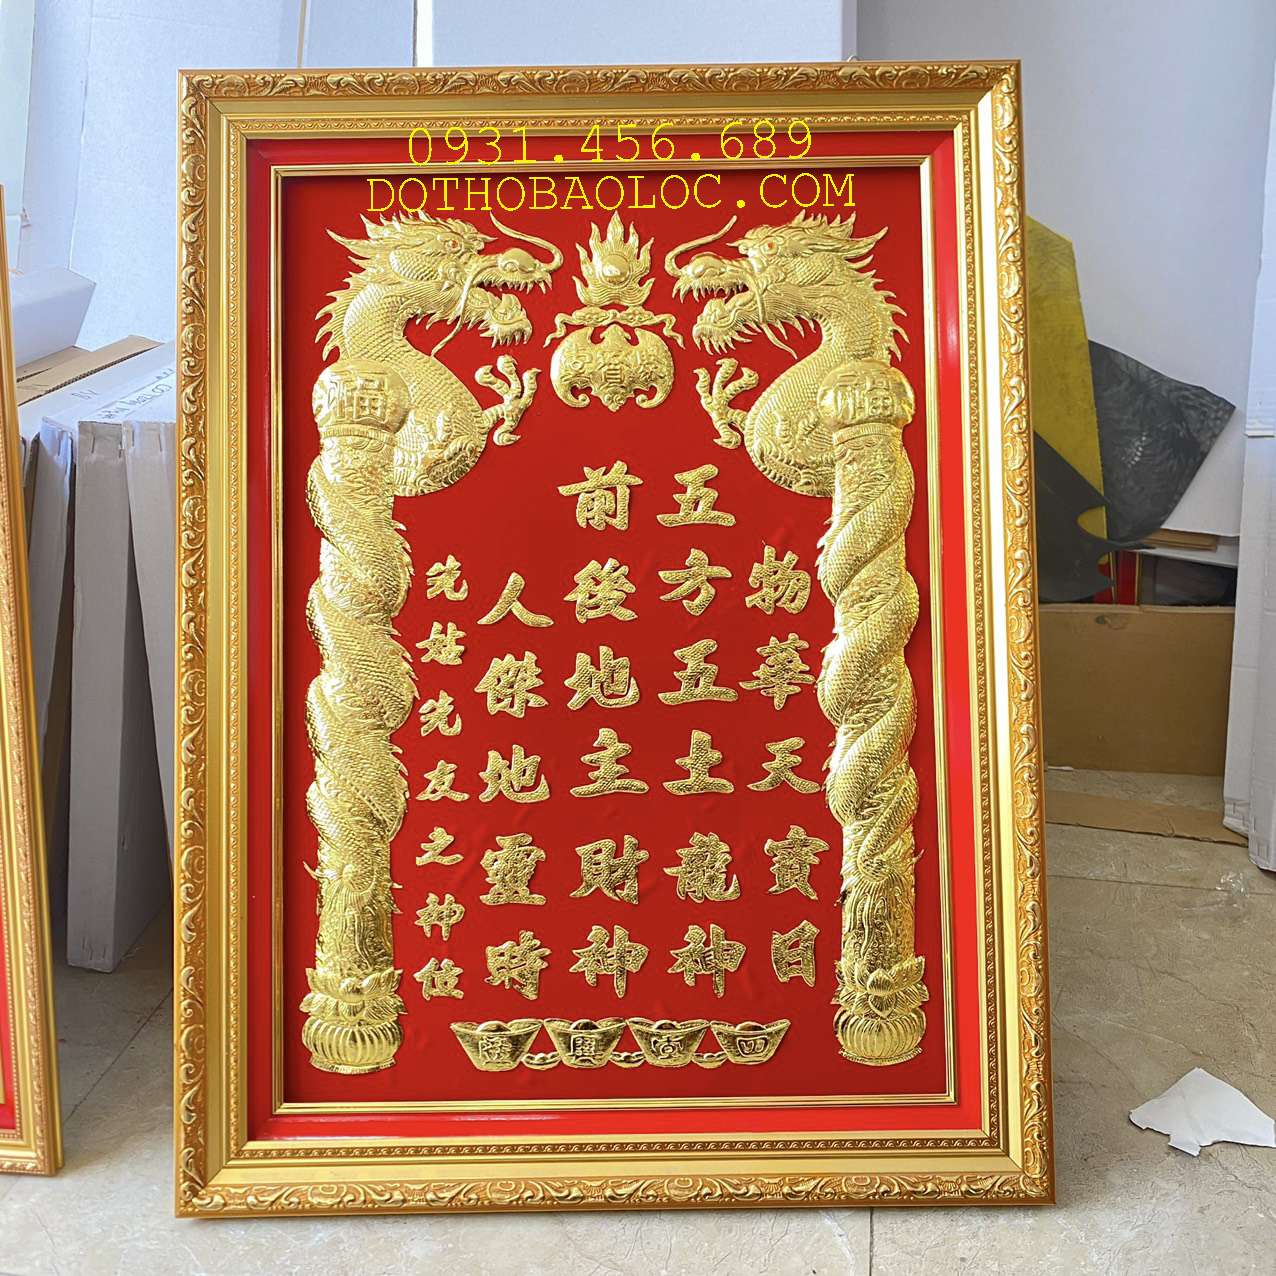 Bài vị Thần Tài Thổ Địa dát vàng 24 K 42cm x 60cm – Nền đỏ ( 2 loại: Có đèn và Không đèn) – Khung nhựa nhập khẩu